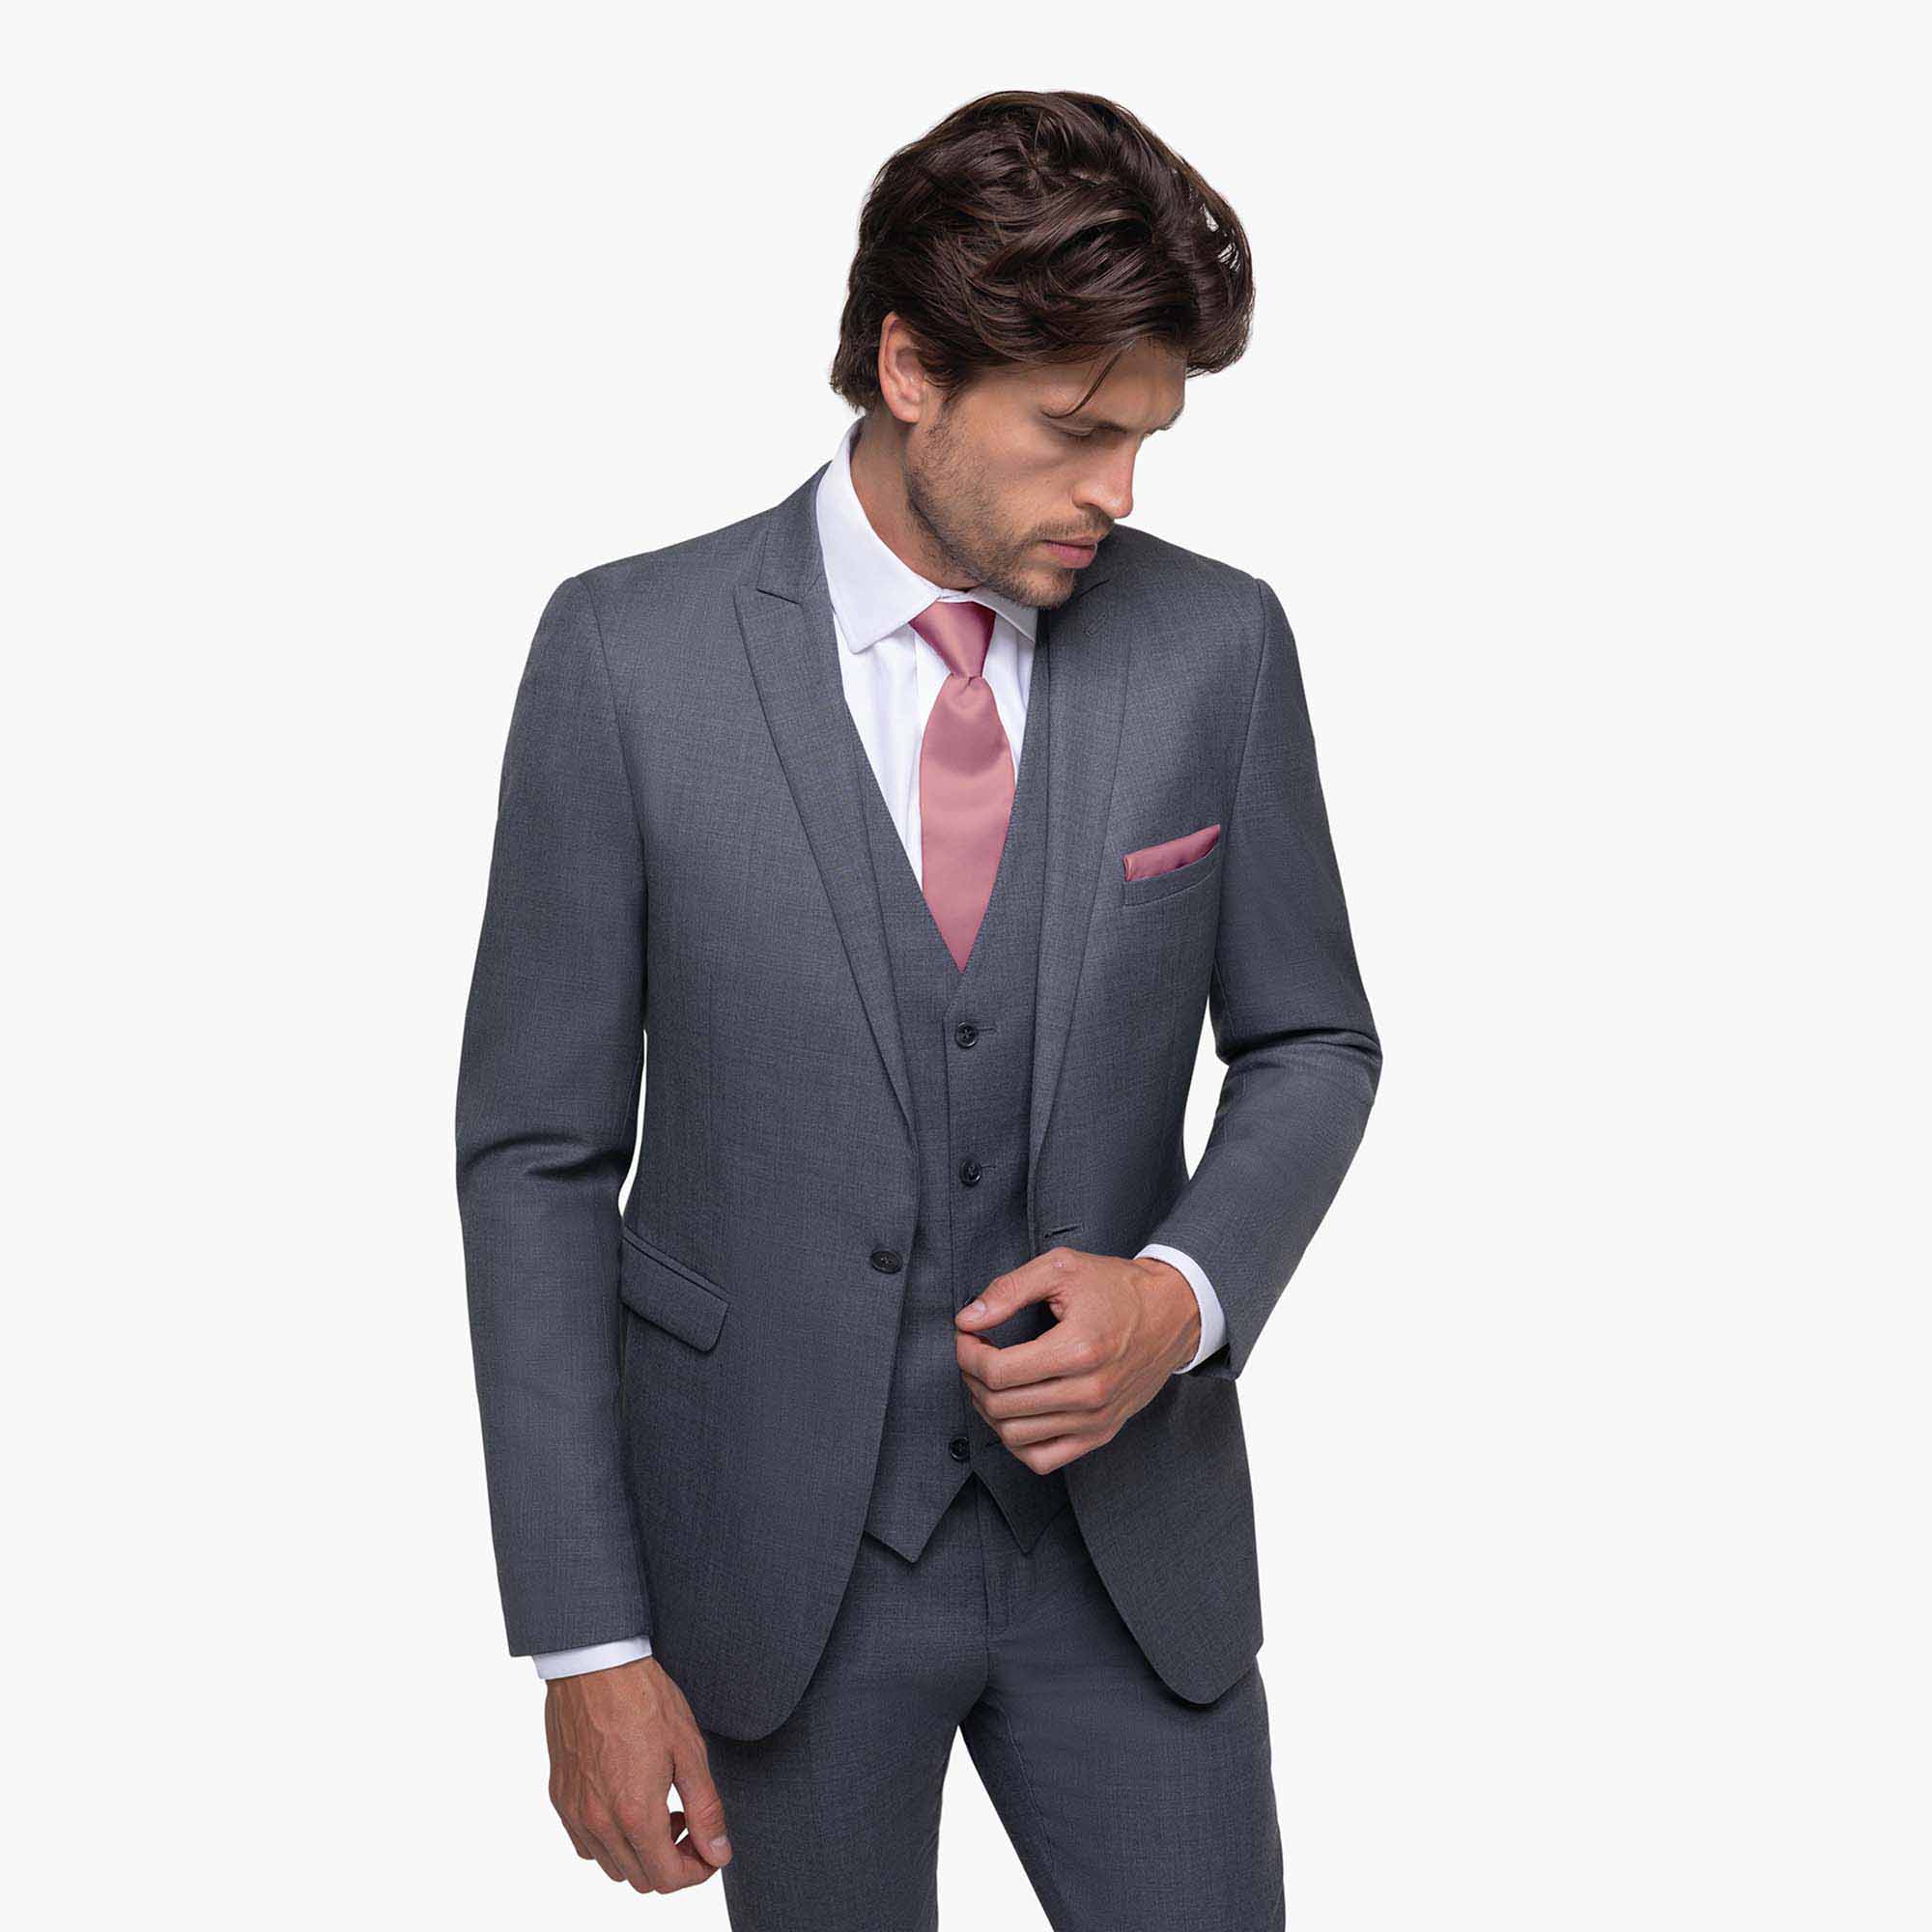 Iron Gray Suit, Dark Gray Suit Rentals